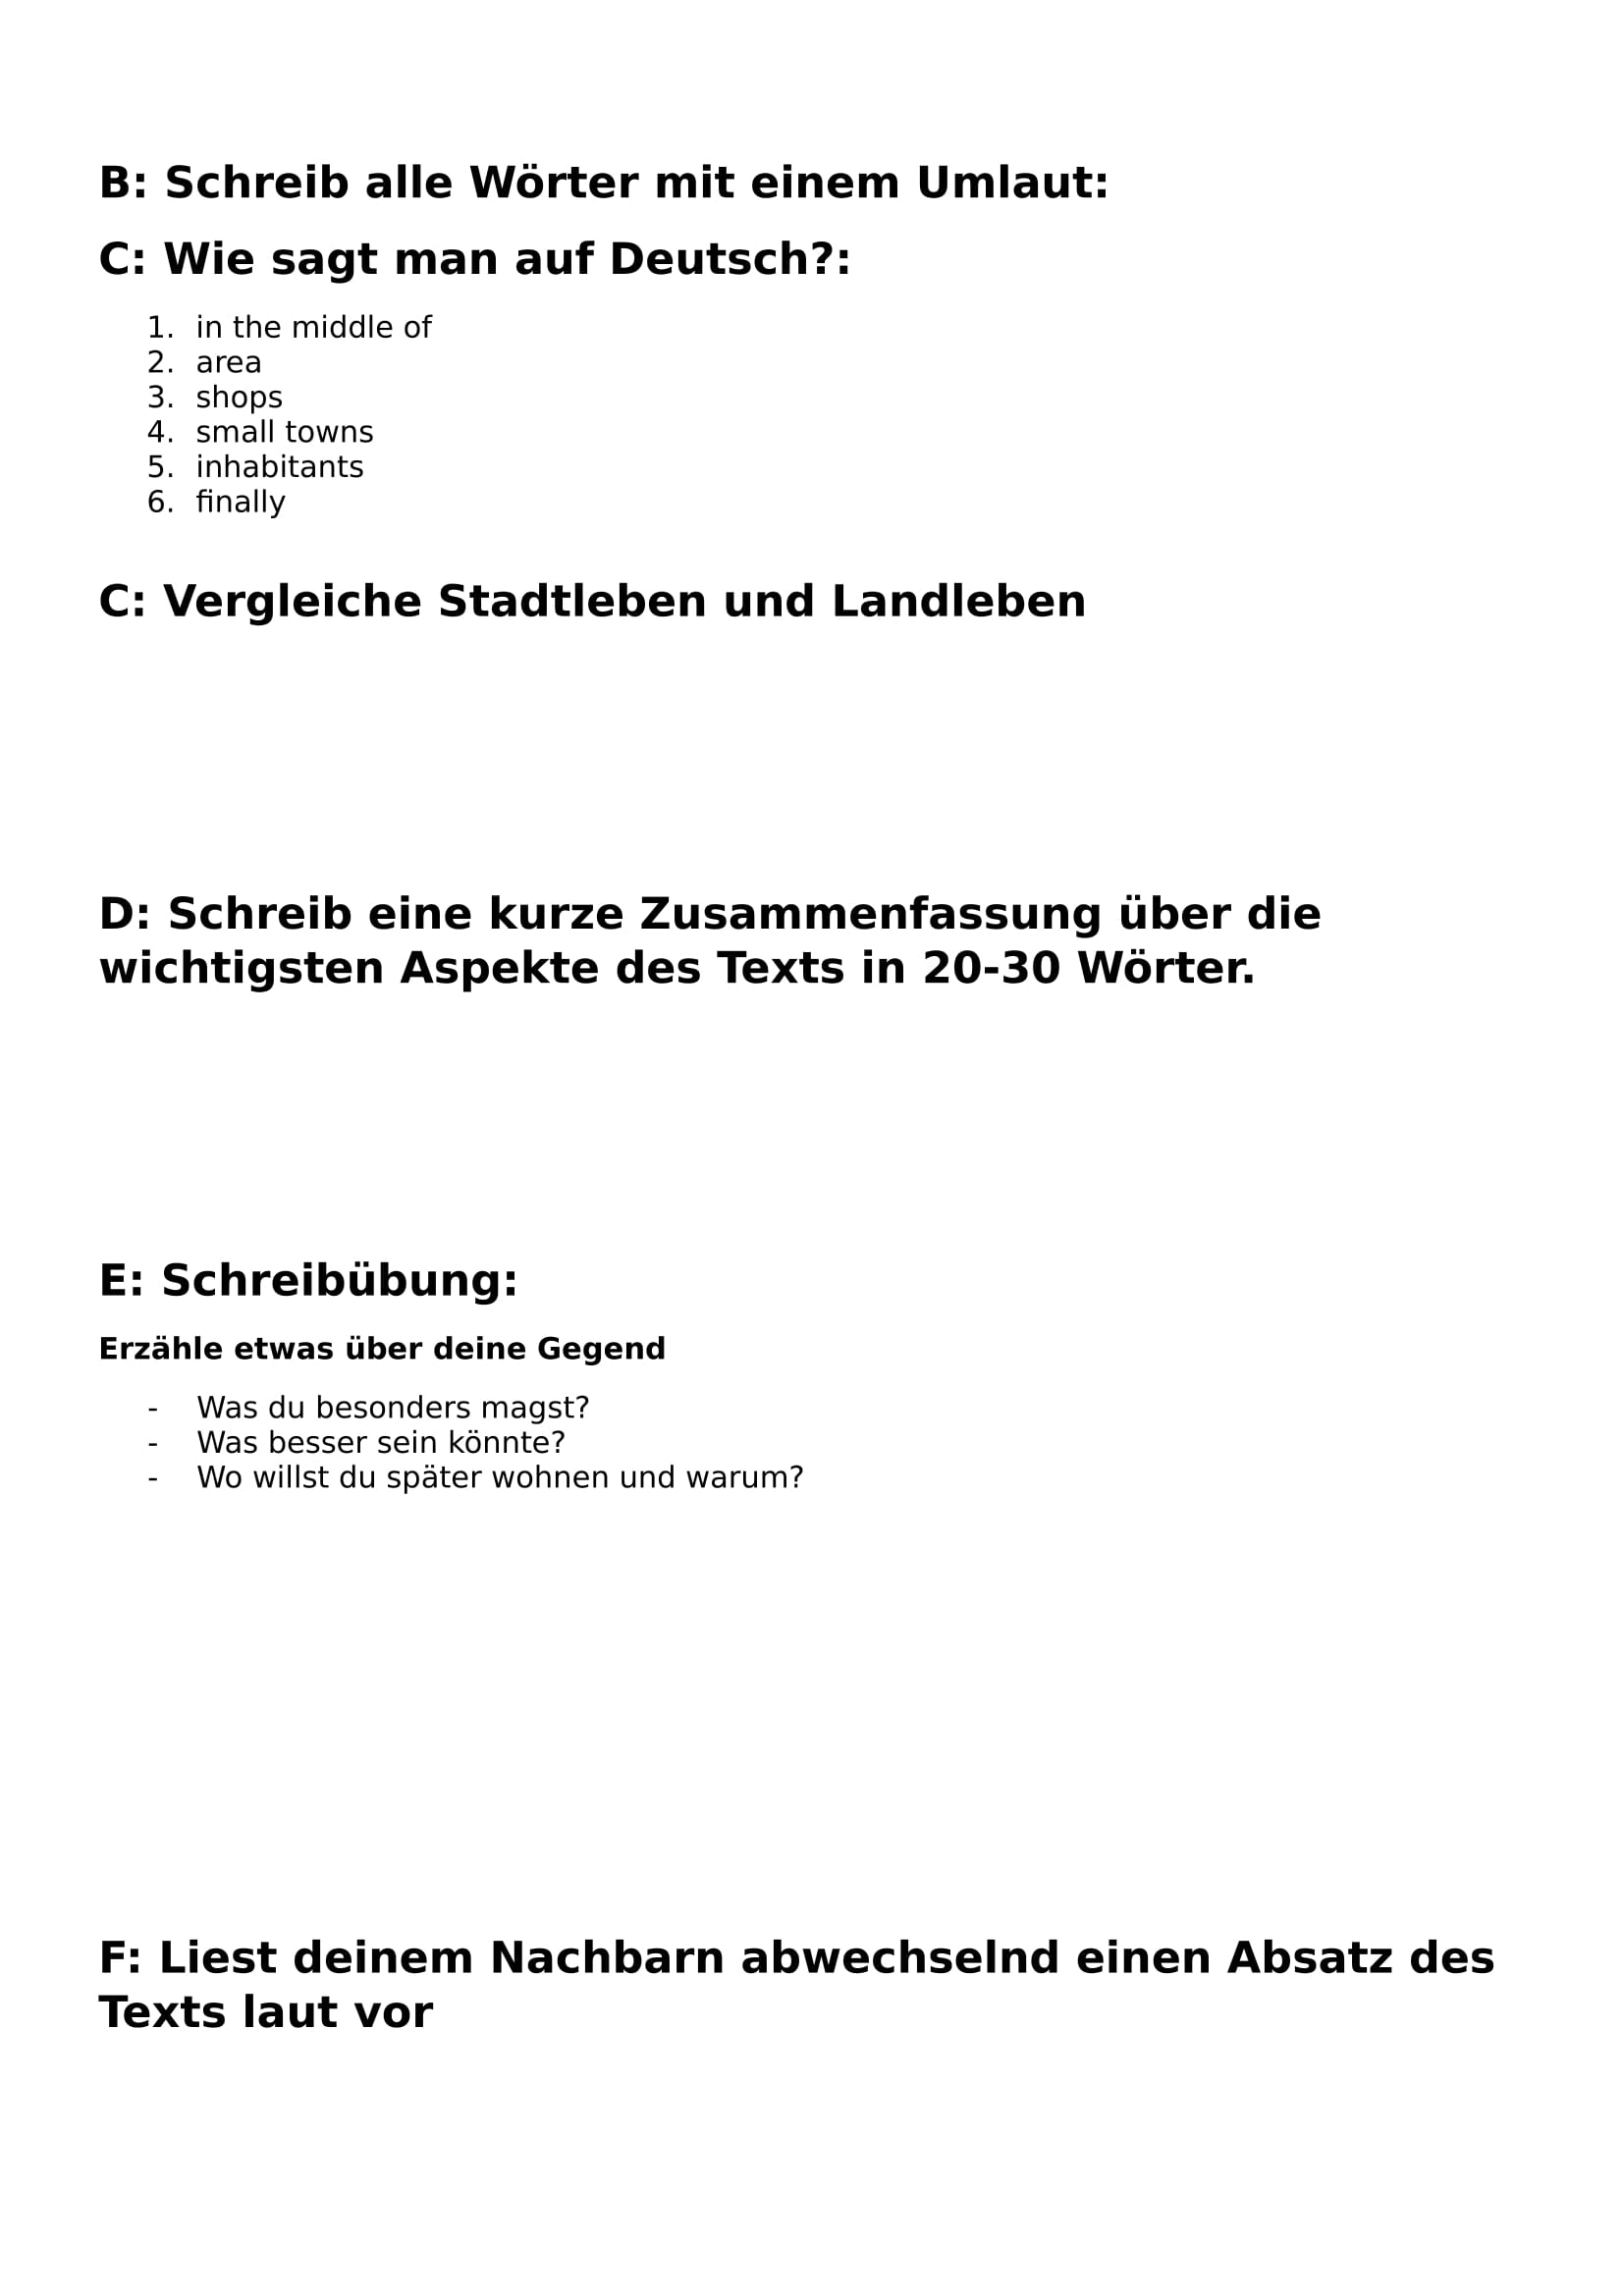 meine stadt essay in german